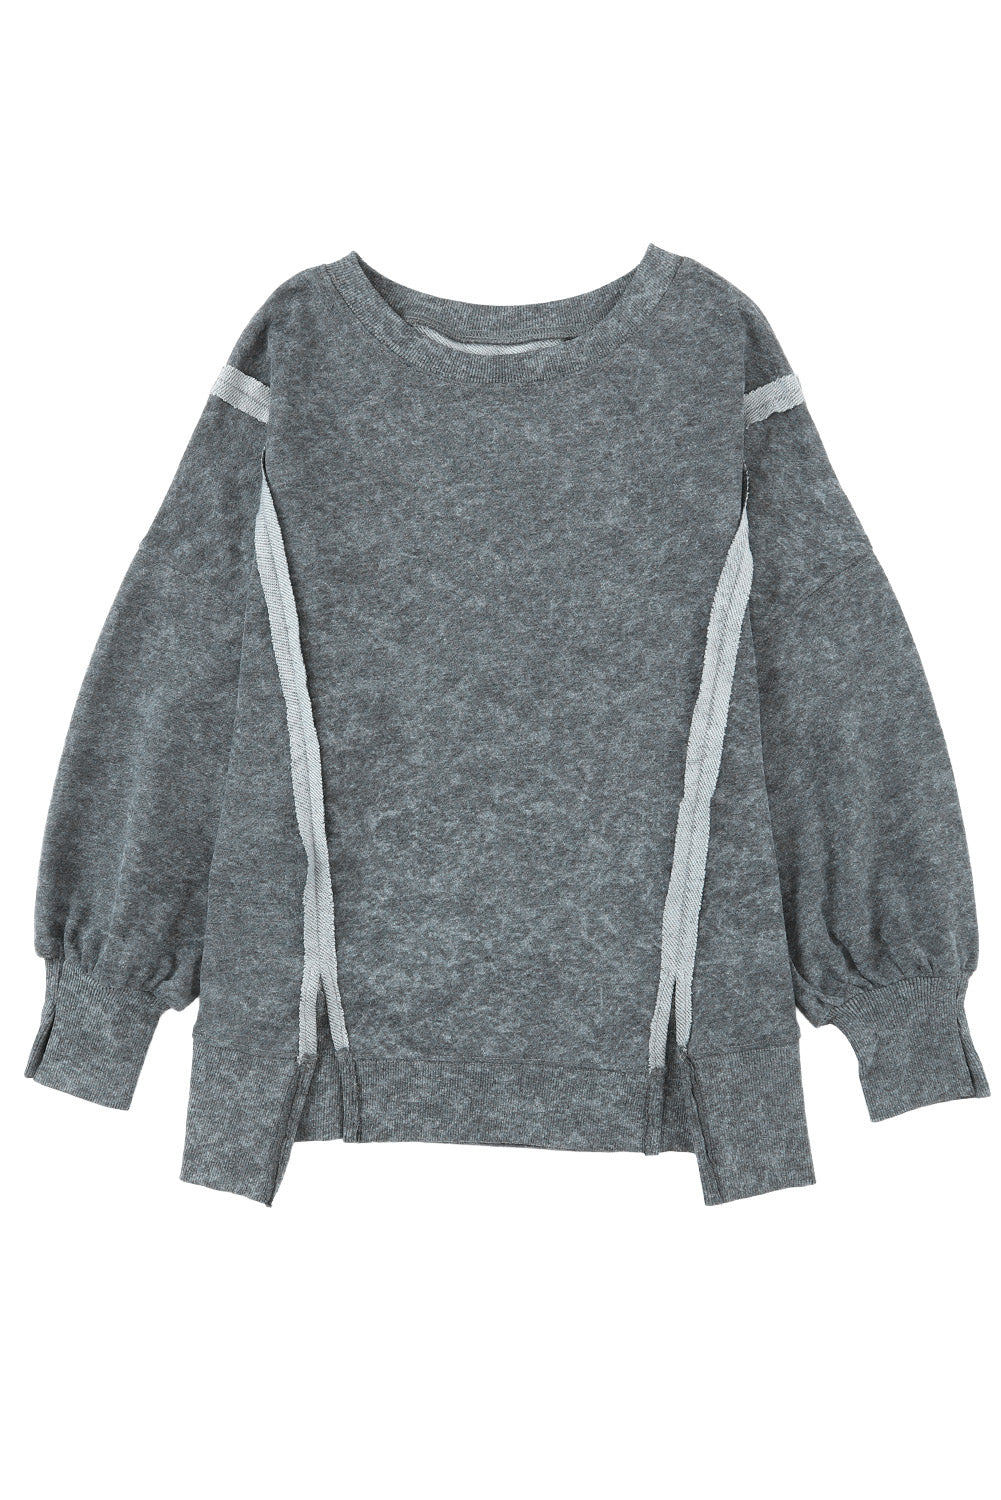 Graues, locker geschnittenes Pullover-Sweatshirt mit Nähten und Schlitzen in Acid-Waschung